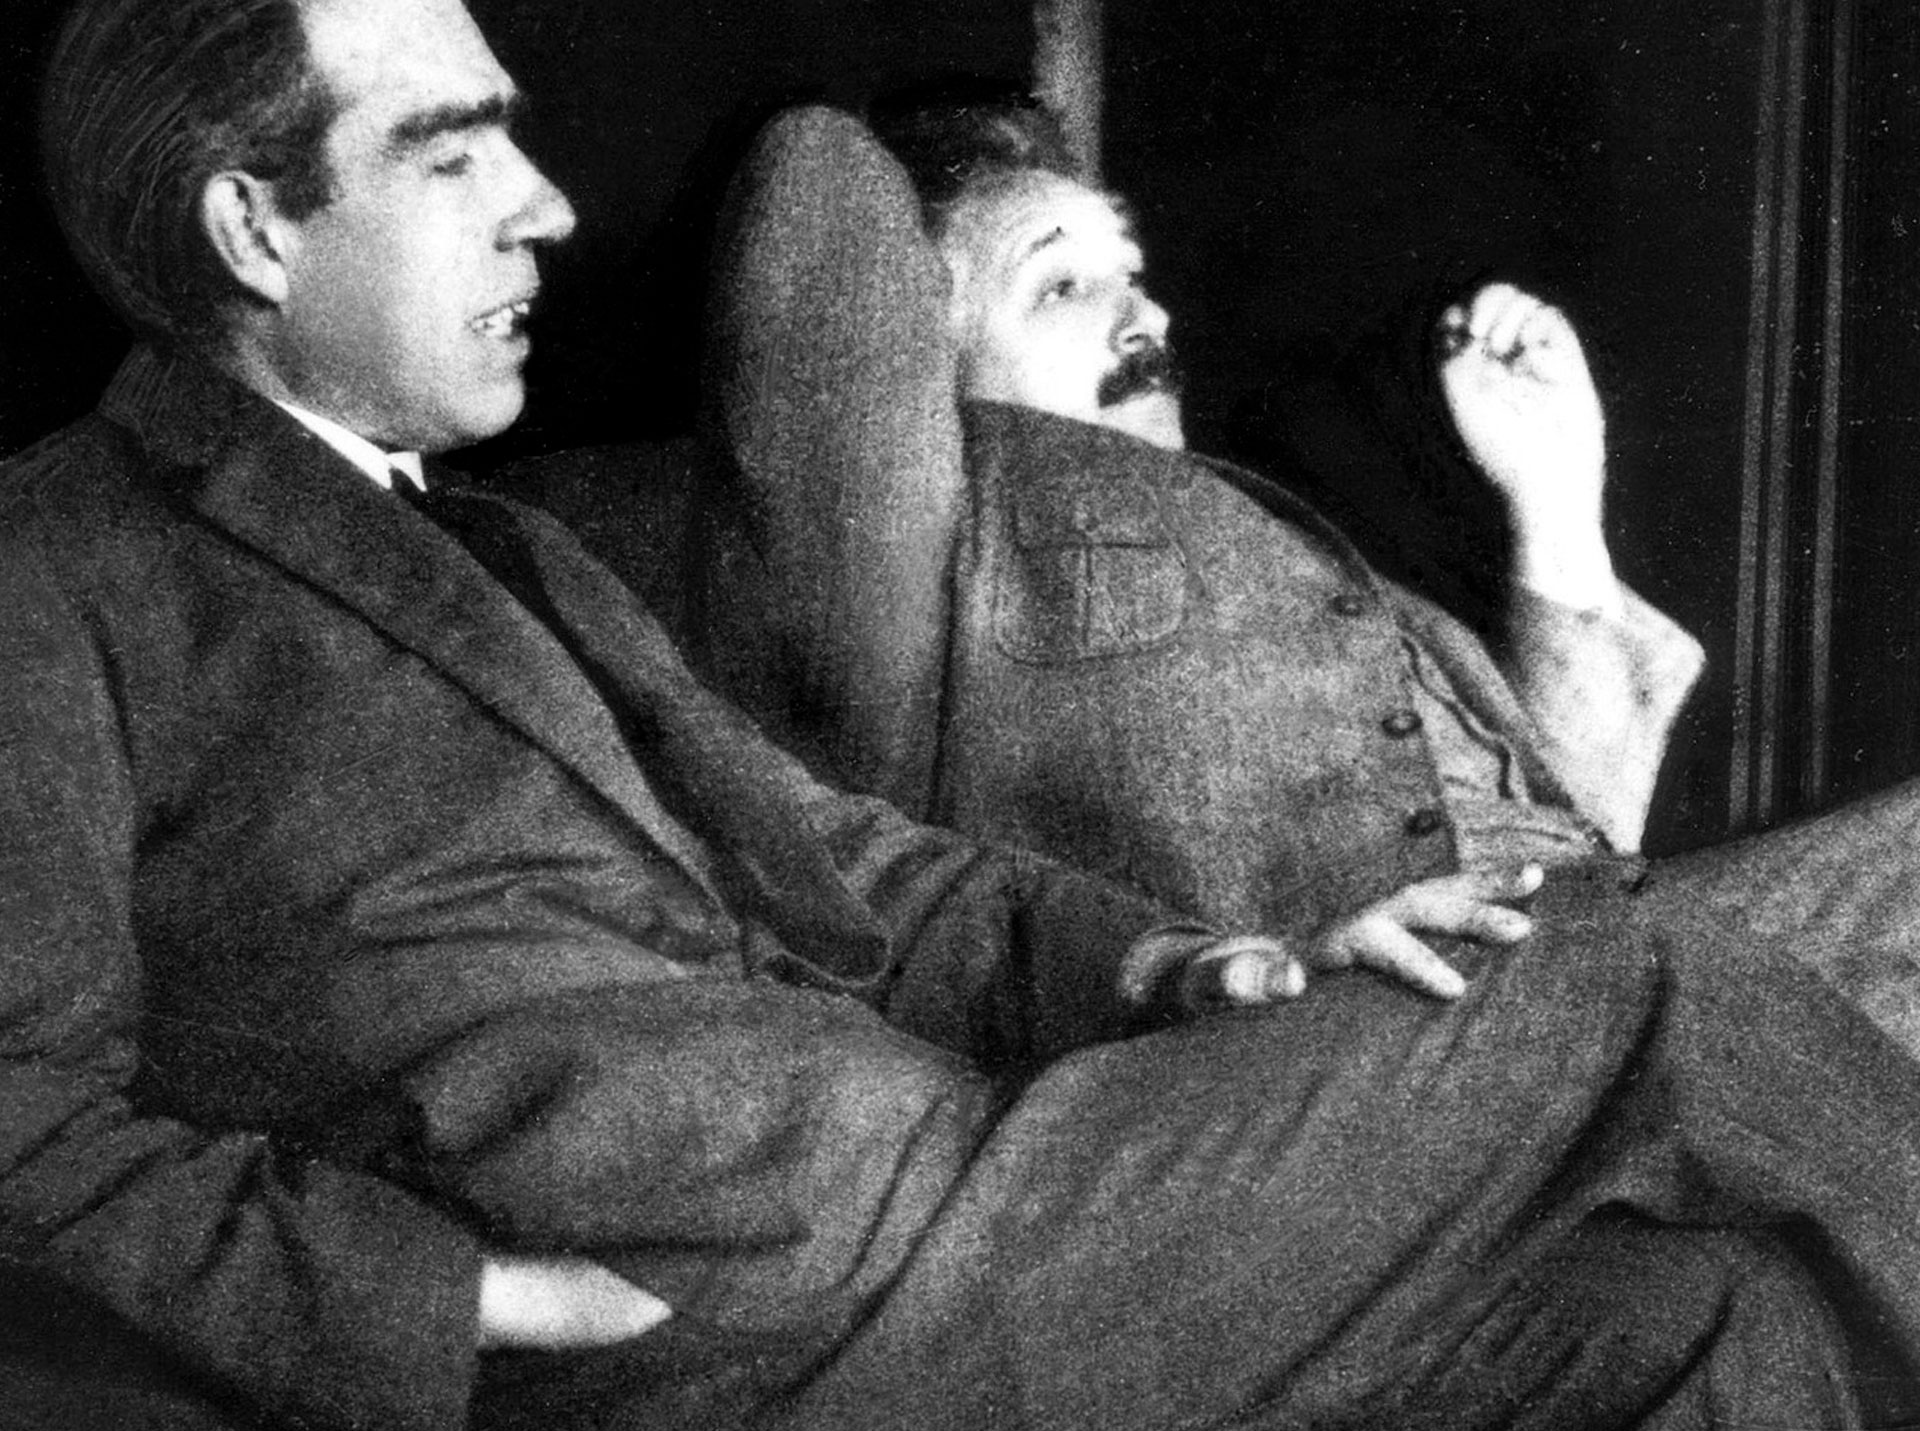 Auf dem schwarz-weiß Foto sind im Vordergrund Niels Bohr und neben ihm etwas im Hintergrund Albert Einstein abgebildet. Beide haben Anzüge an, sitzen lässig angelehnt und scheinen gemeinsam zu philosophieren. Symbol dafür, was die Quantenphysik dazu sagt, wer du bist. 